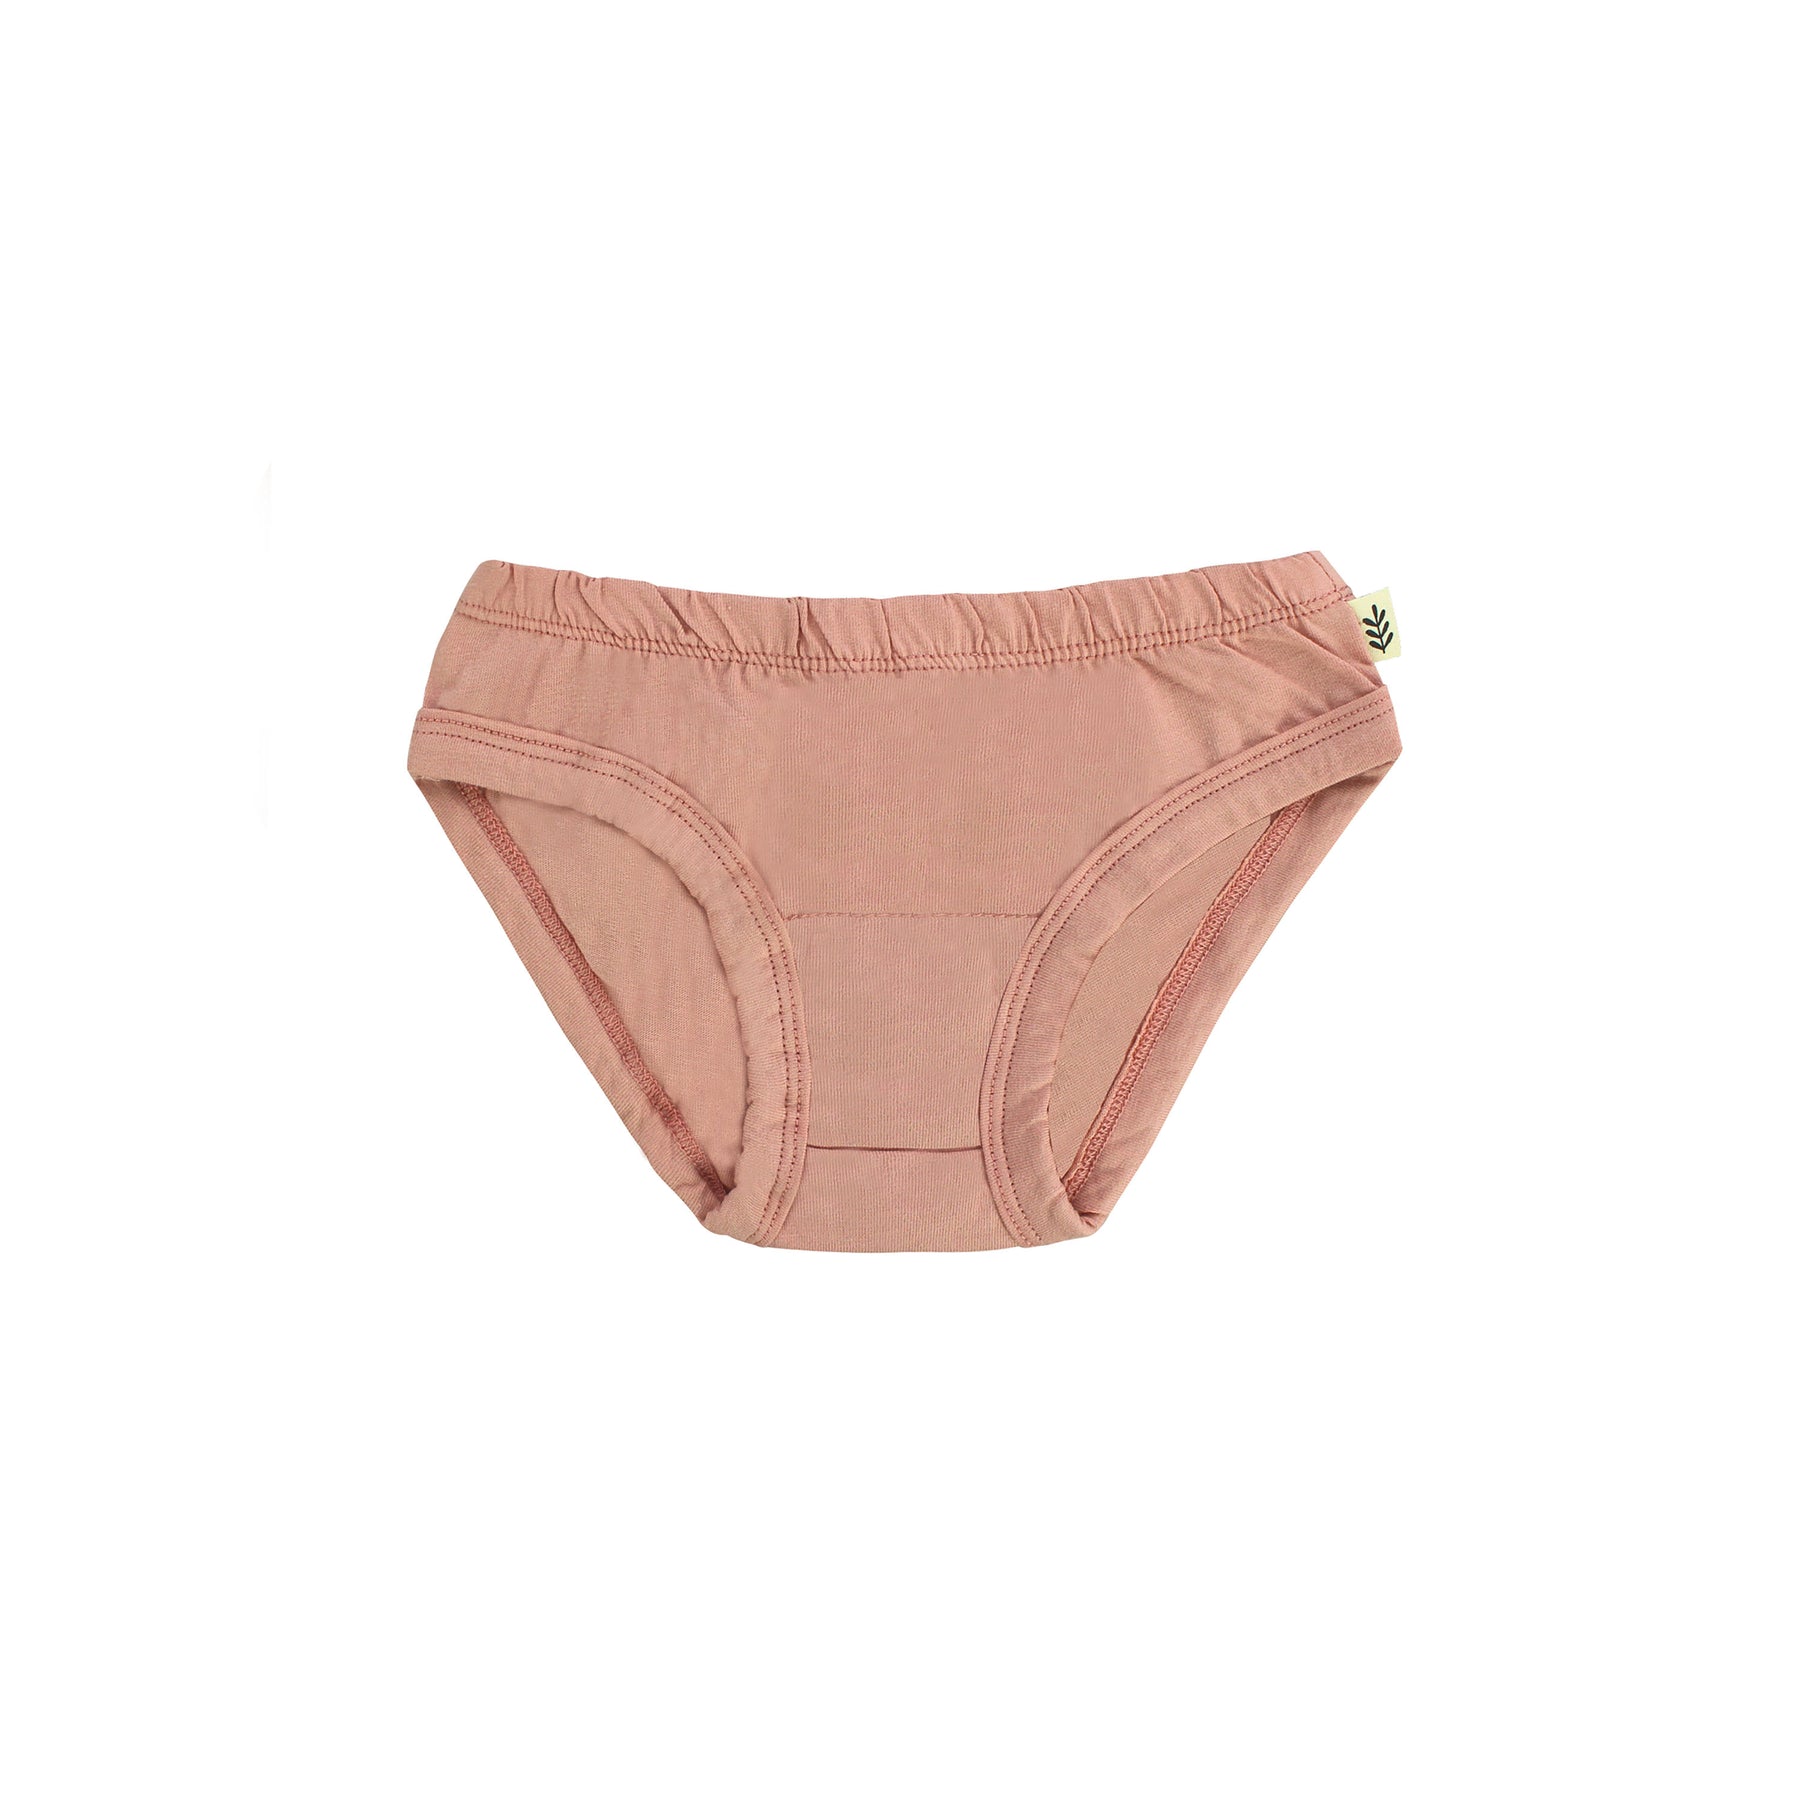 Organic-cotton/hemp Cheeky Undies, Blush-pink Avocado Pit Dye